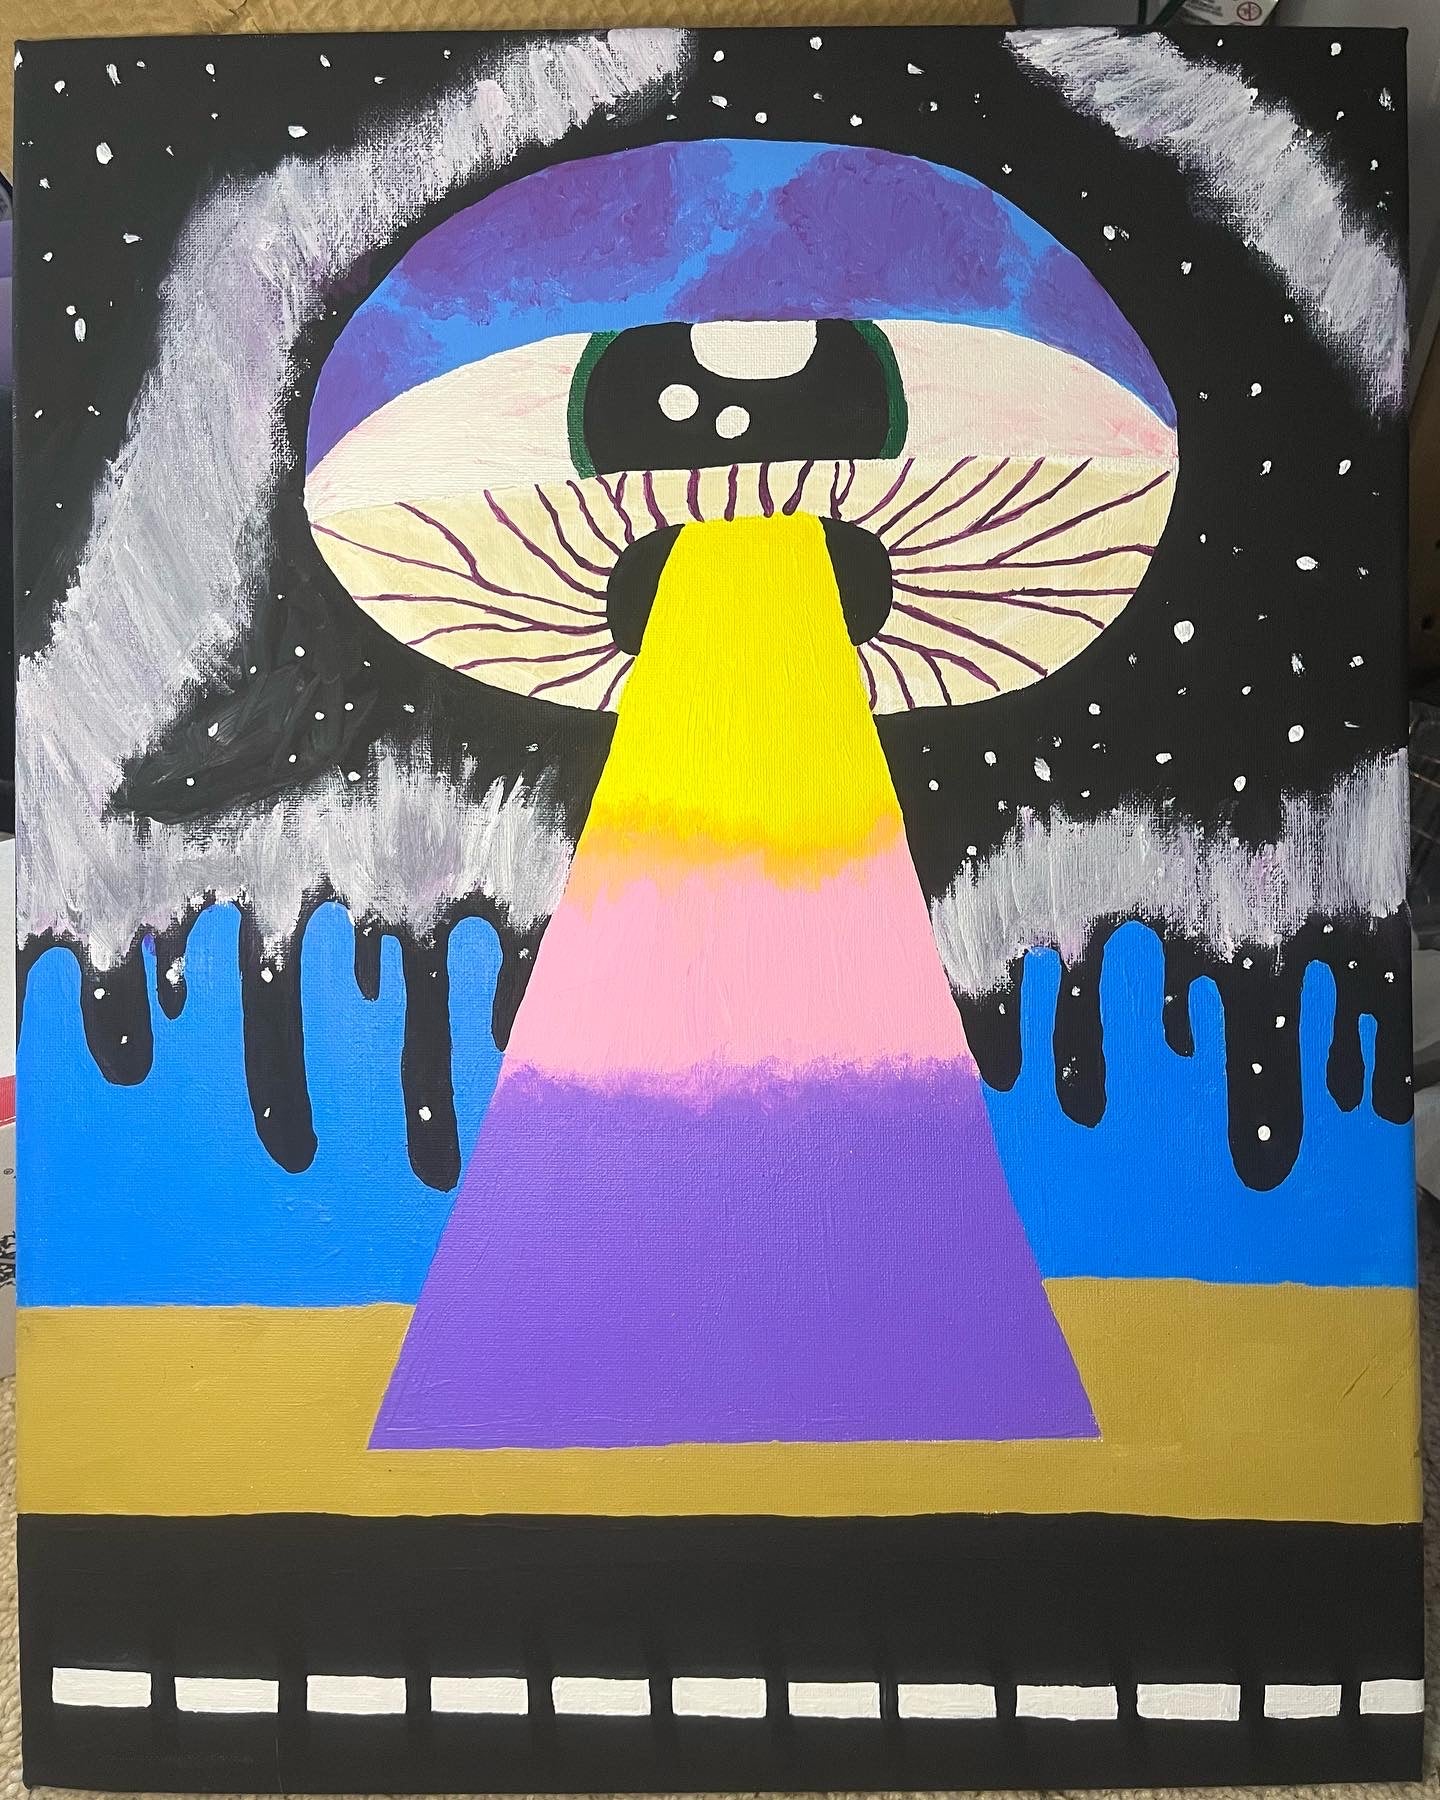 Trippy mushroom alien spaceship painting